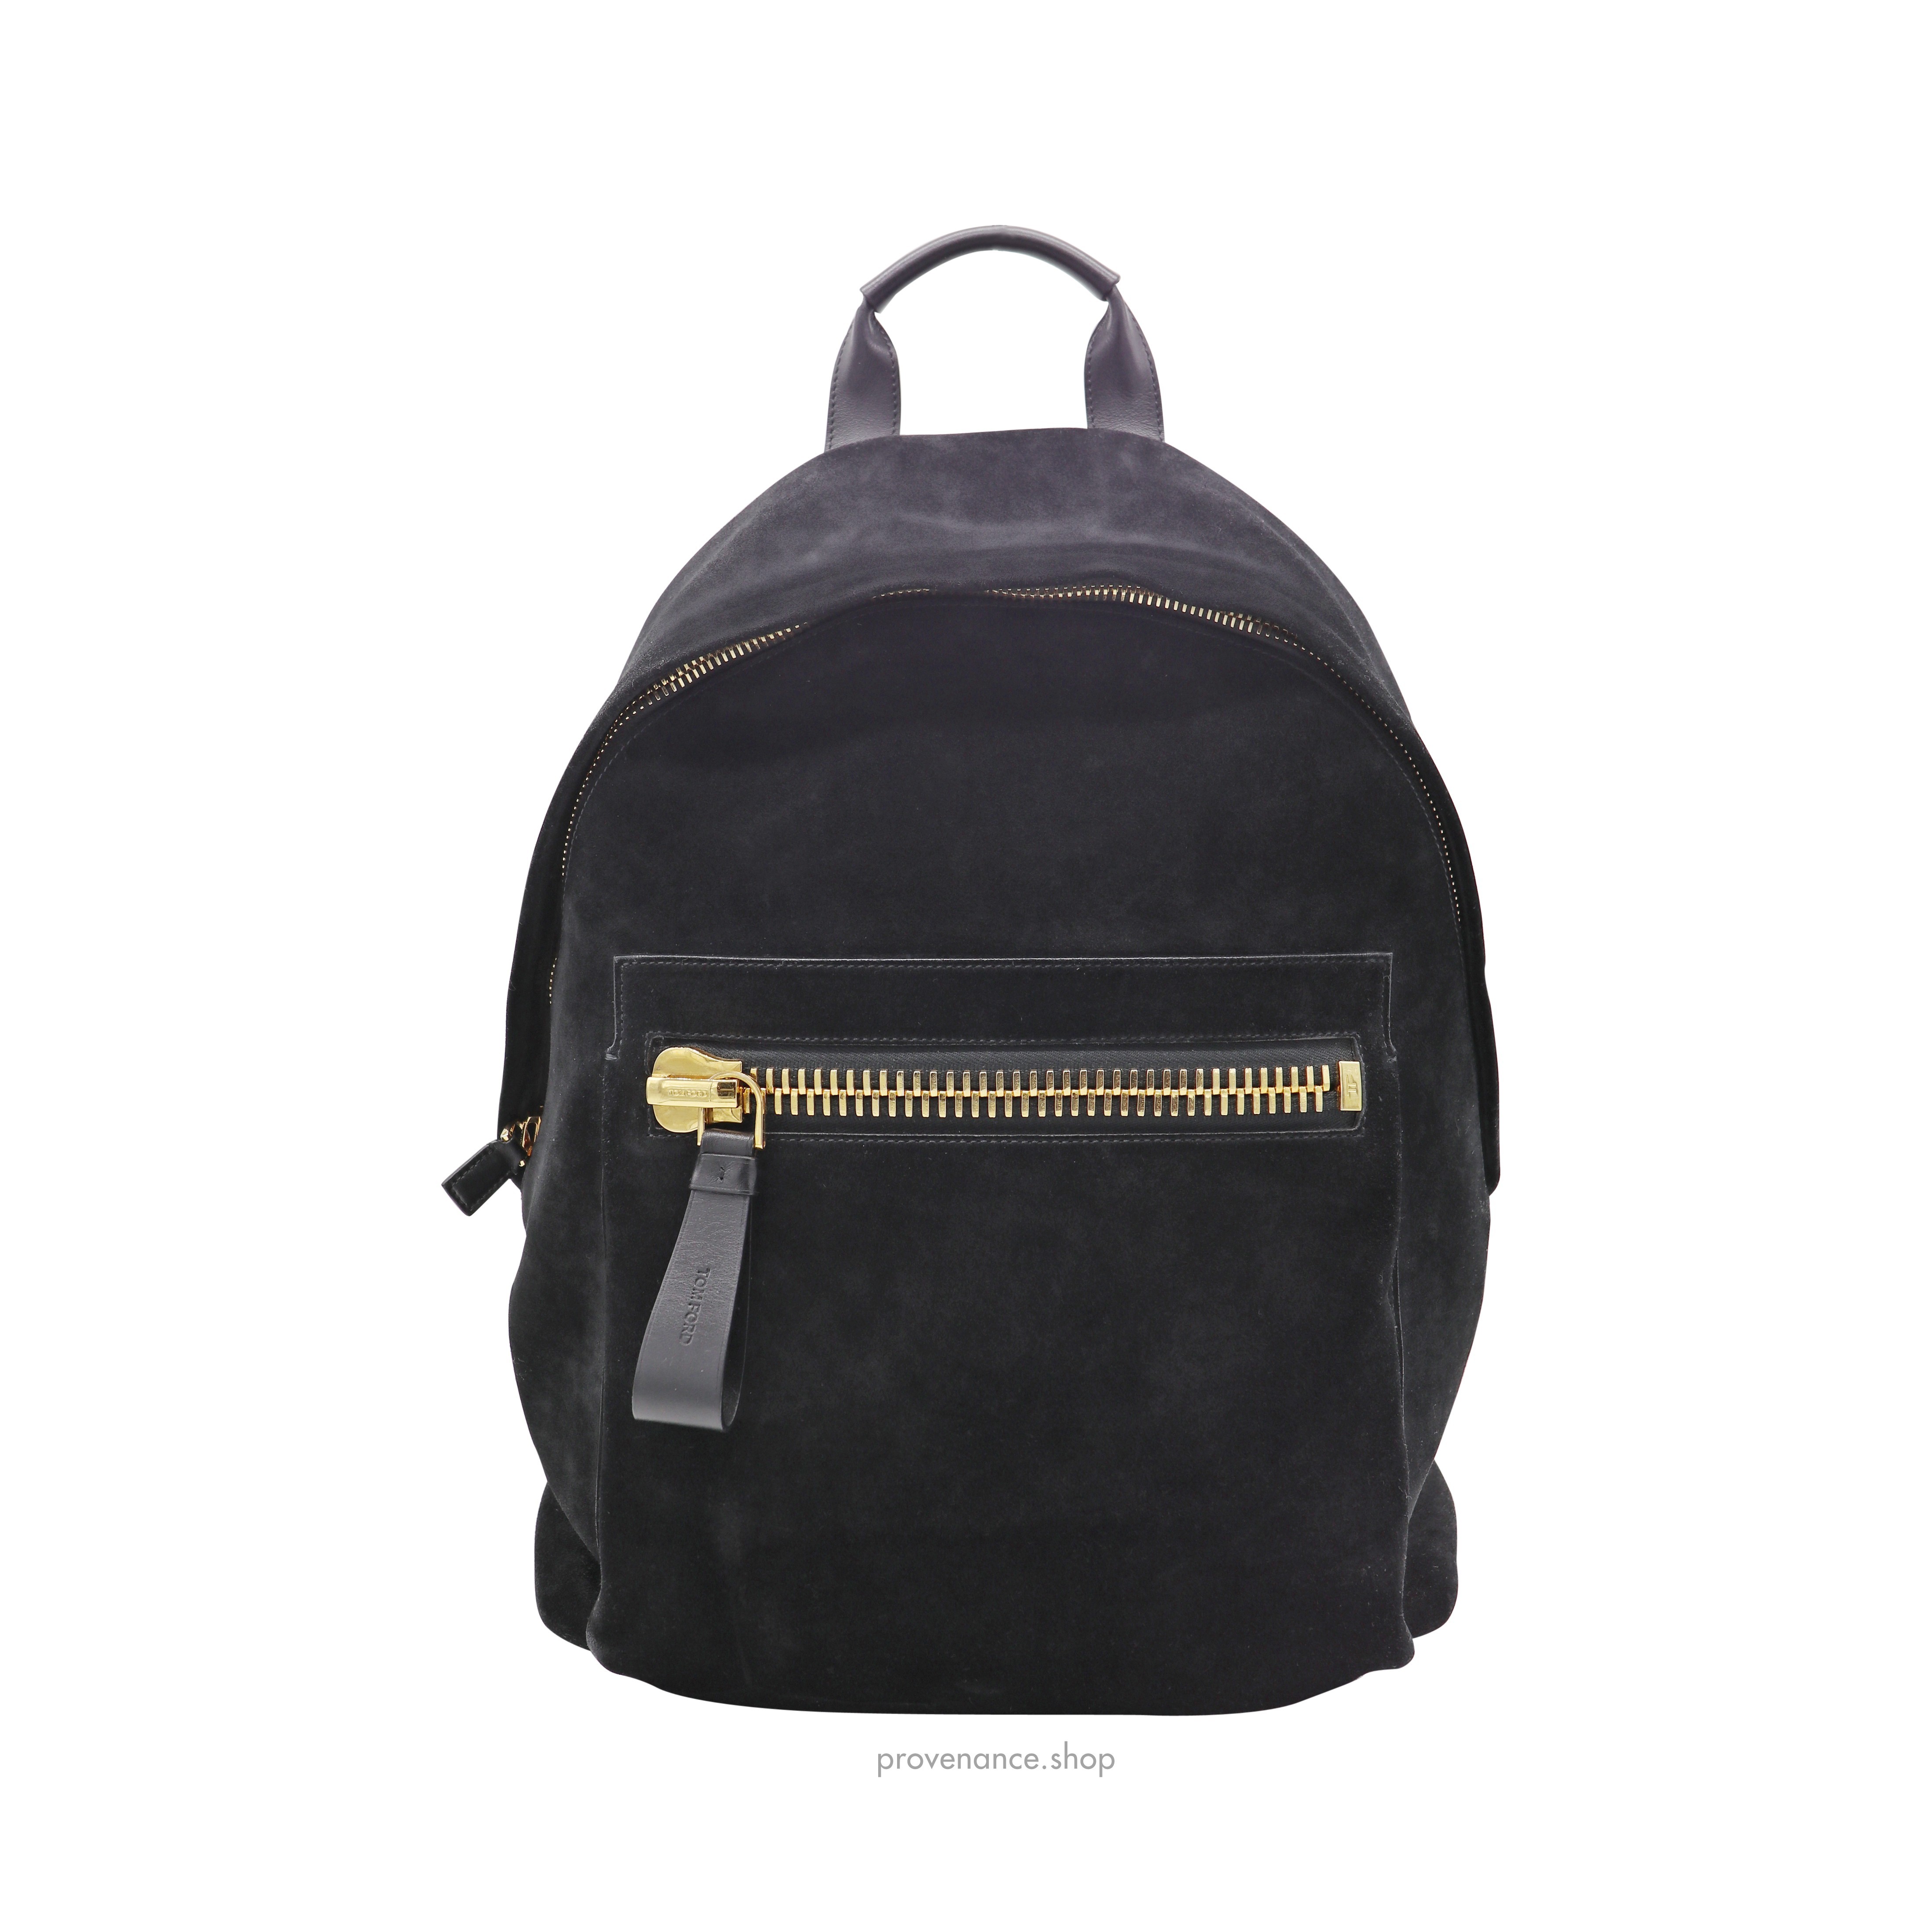 Buckley Backpack Bag - Black Suede - 2